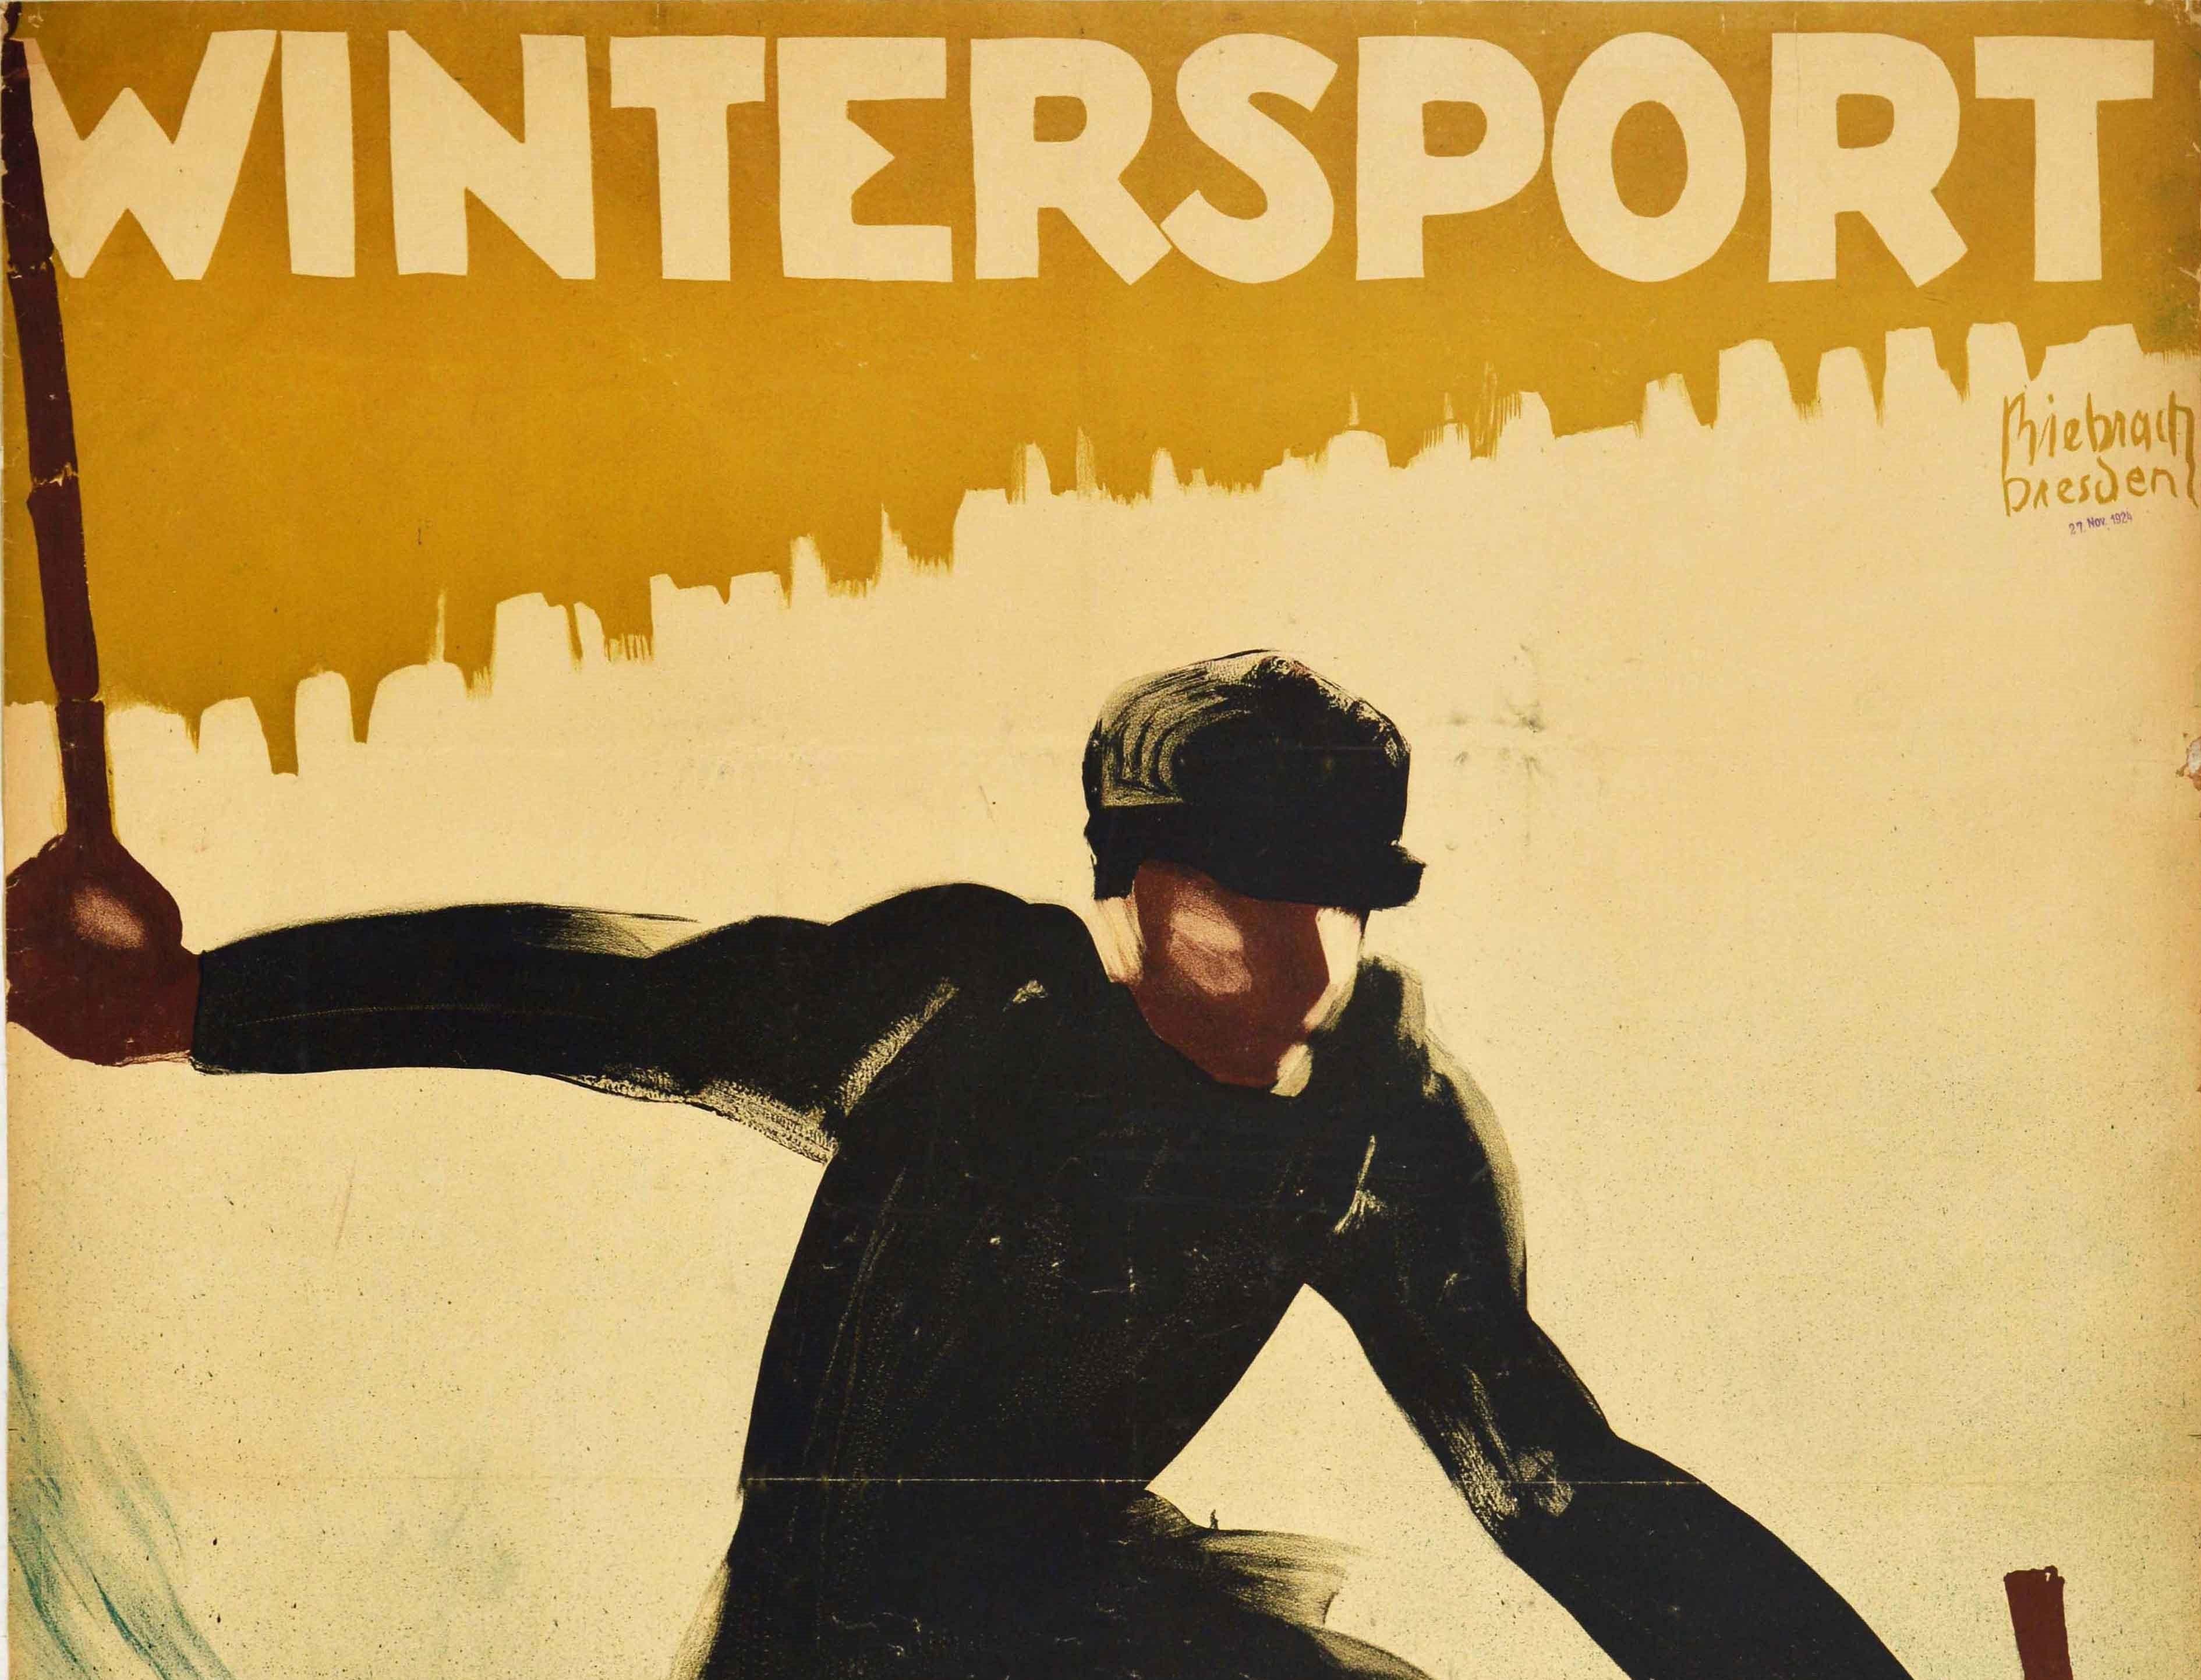 Original-Skiplakat mit dem Titel Wintersport, das ein dynamisches Kunstwerk von Karl Biebrach (geb. 1882) zeigt, das einen schwarz gekleideten Skifahrer darstellt, der auf Holzskiern einen verschneiten Hang hinunterfährt. Großes Format. Ordentlicher